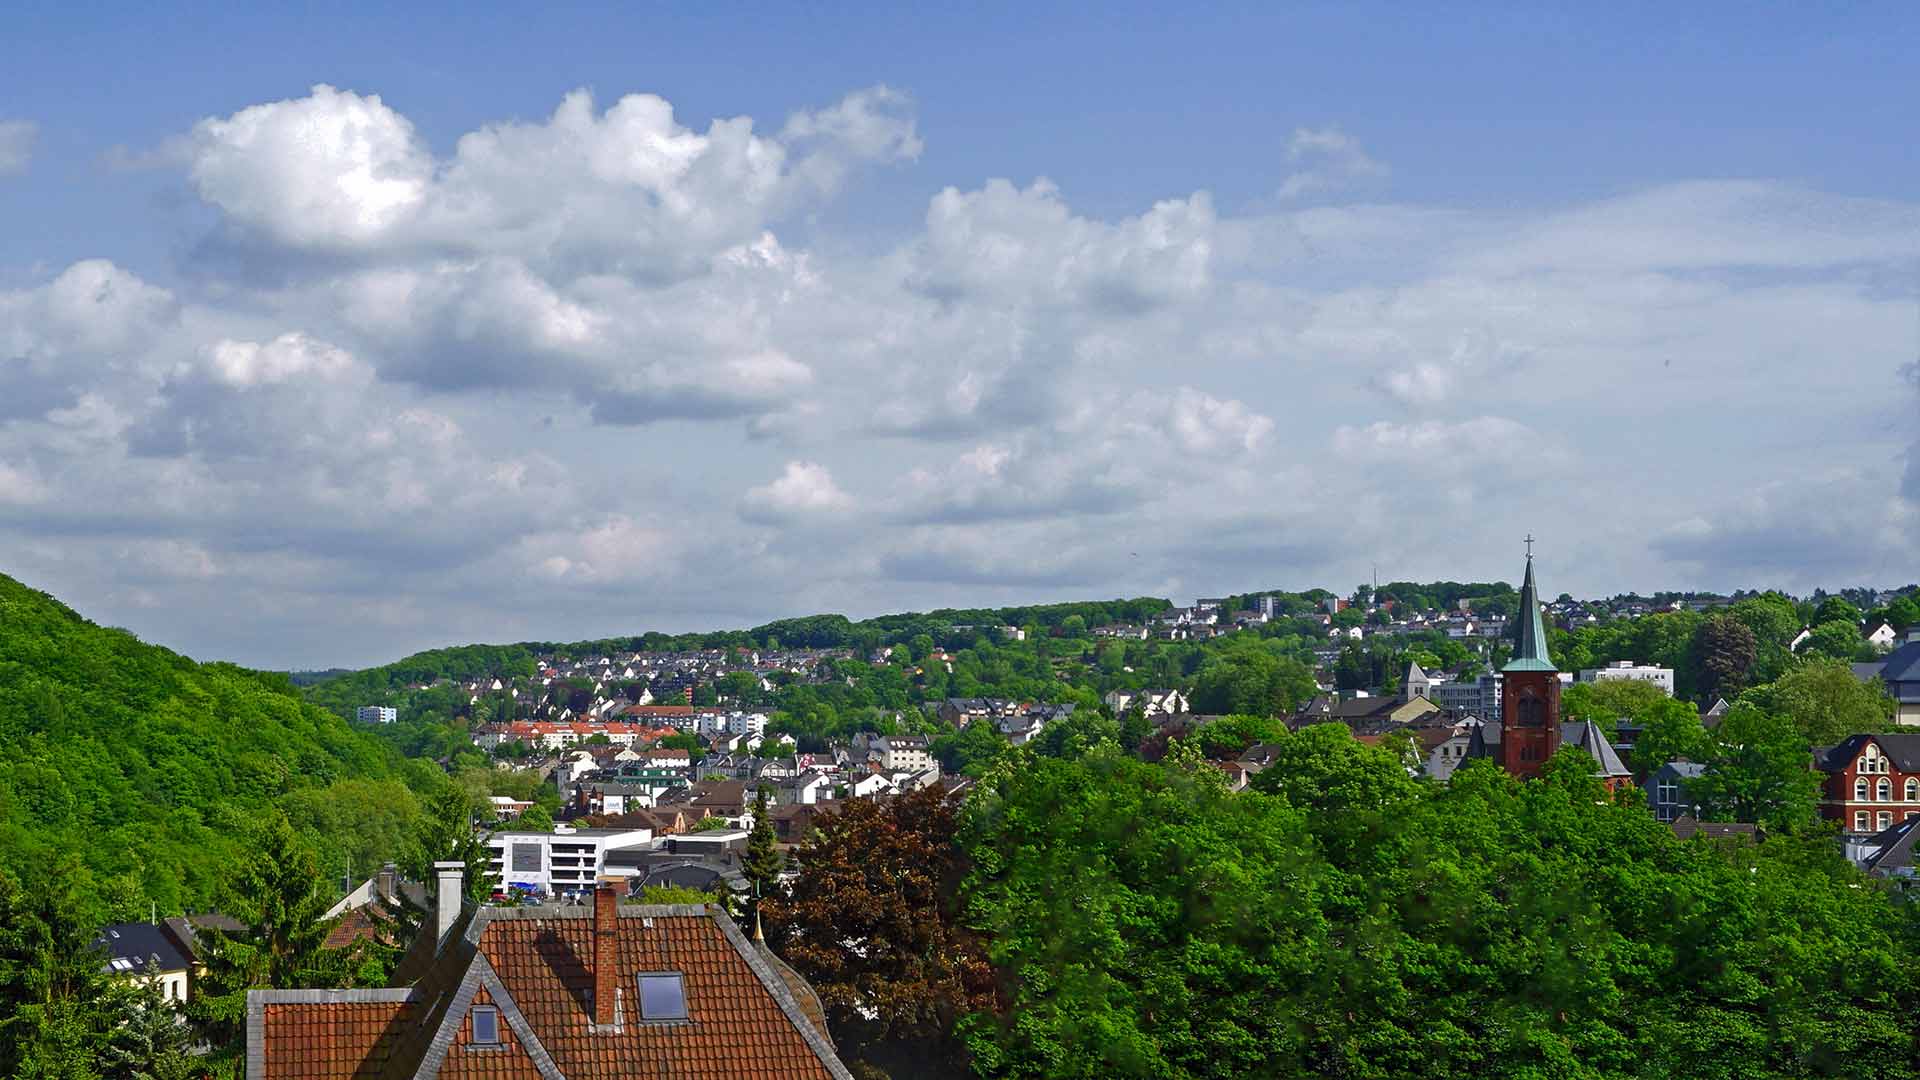 Werbeagentur Dortmund Blick auf Wohngebiet